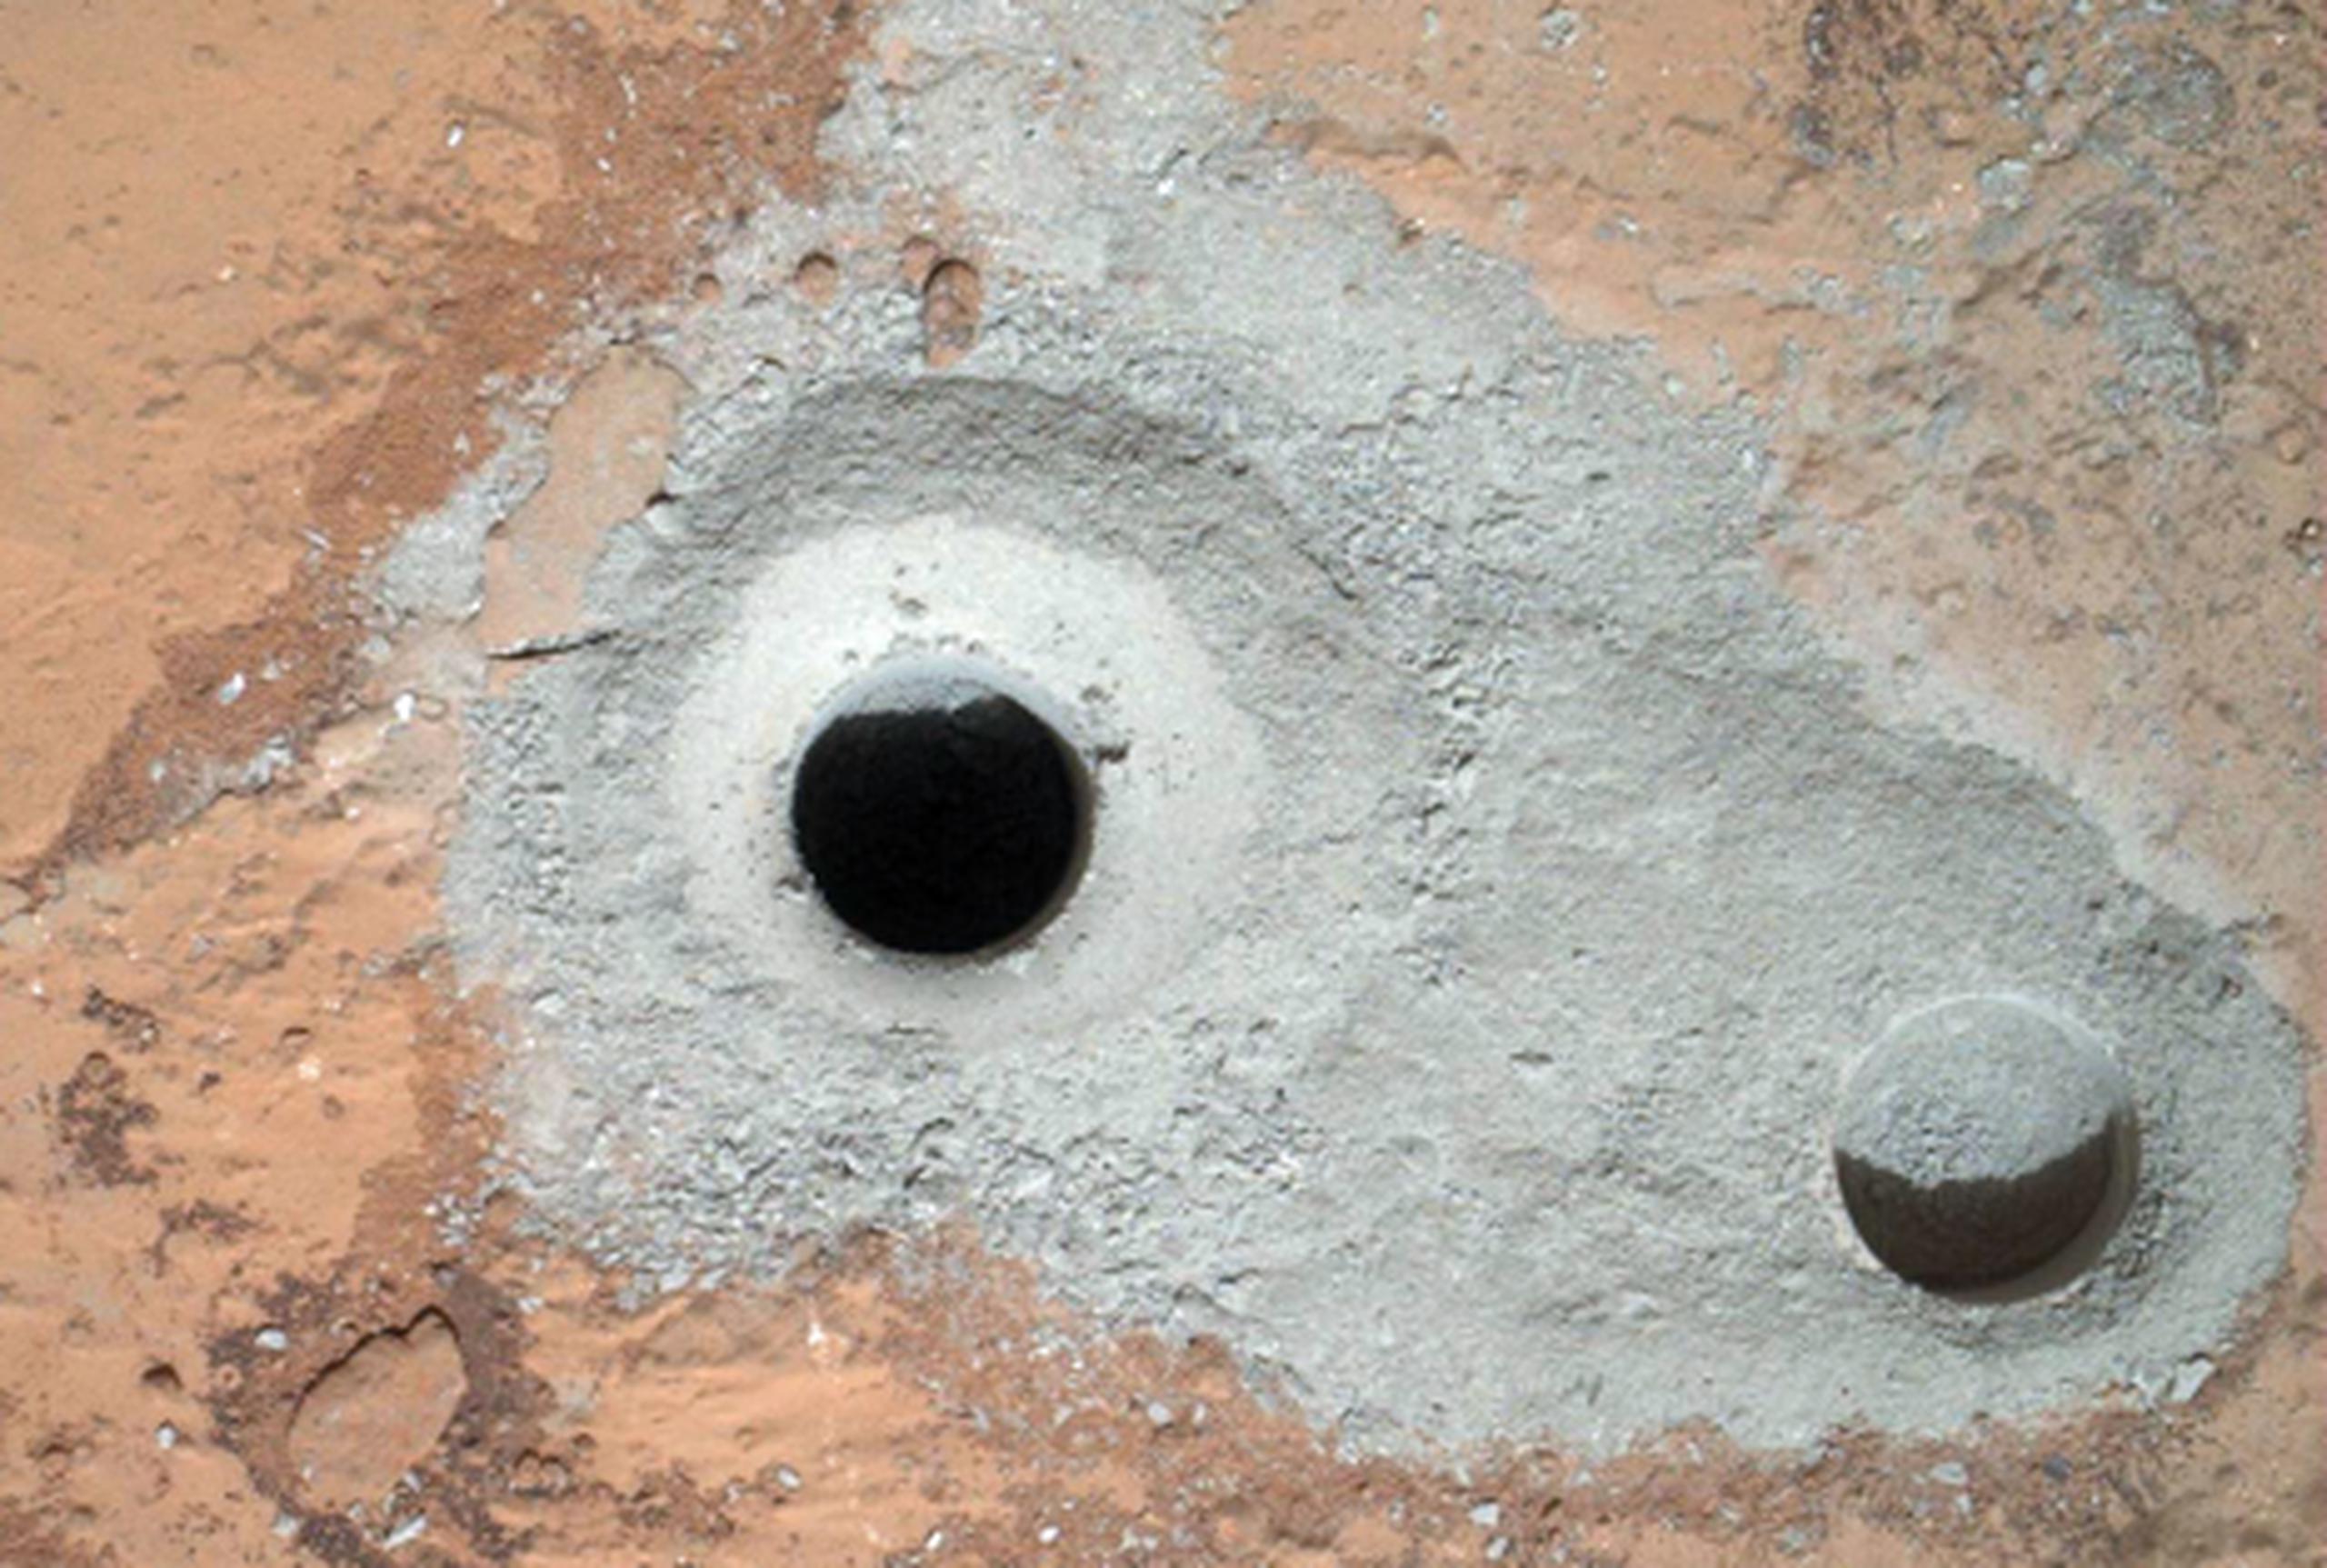 La tarea era tan compleja que los ingenieros pasaron varios días instruyendo a Curiosity para que palpara el terreno, perforara hoyos de prueba e hiciera una miniperforación a modo de ensayo. (AP/NASA)